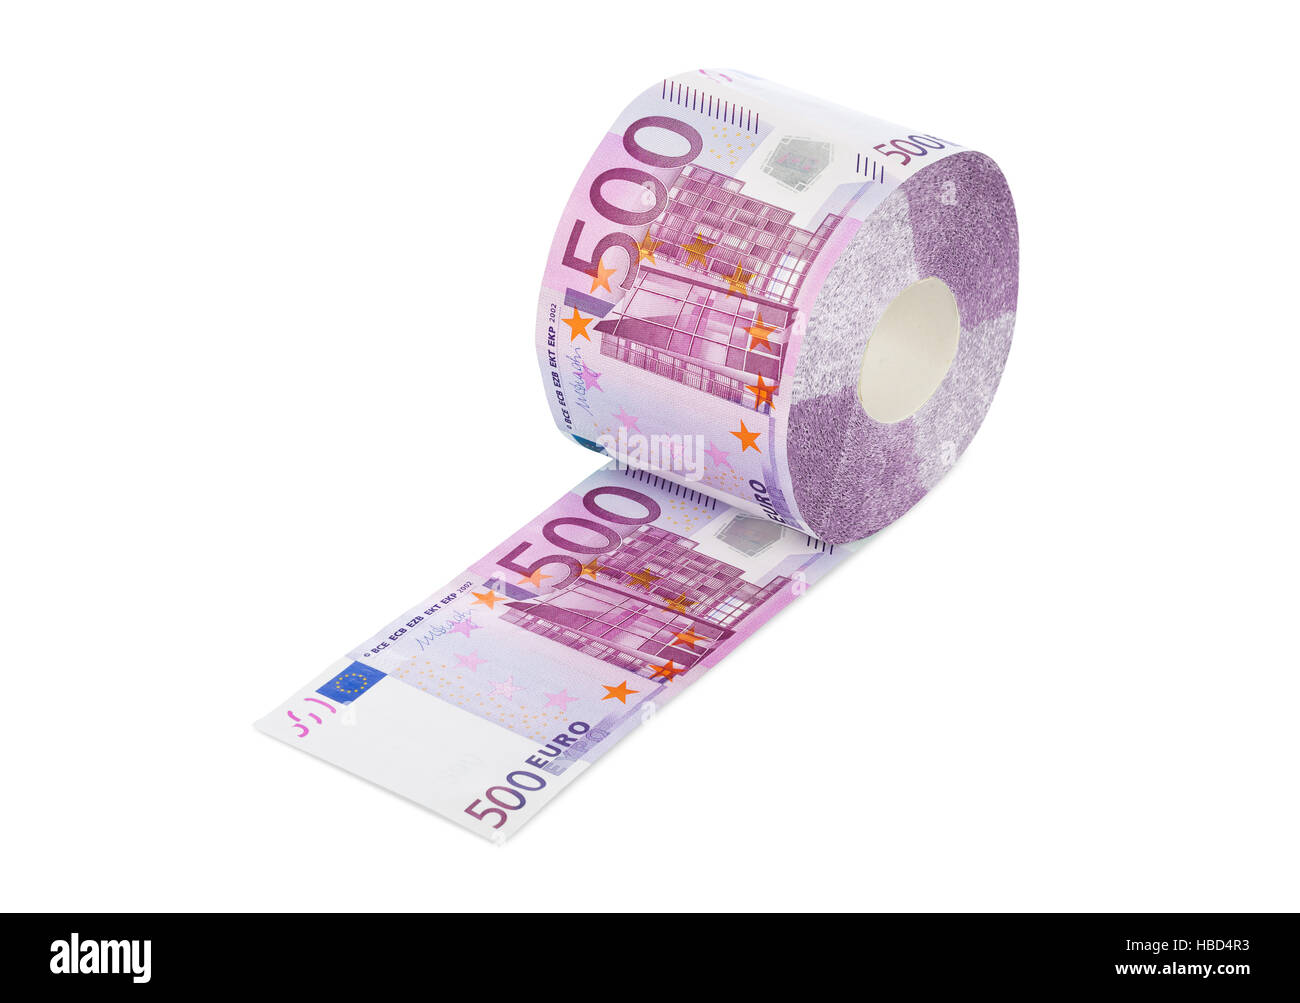 Euro toilet immagini e fotografie stock ad alta risoluzione - Alamy